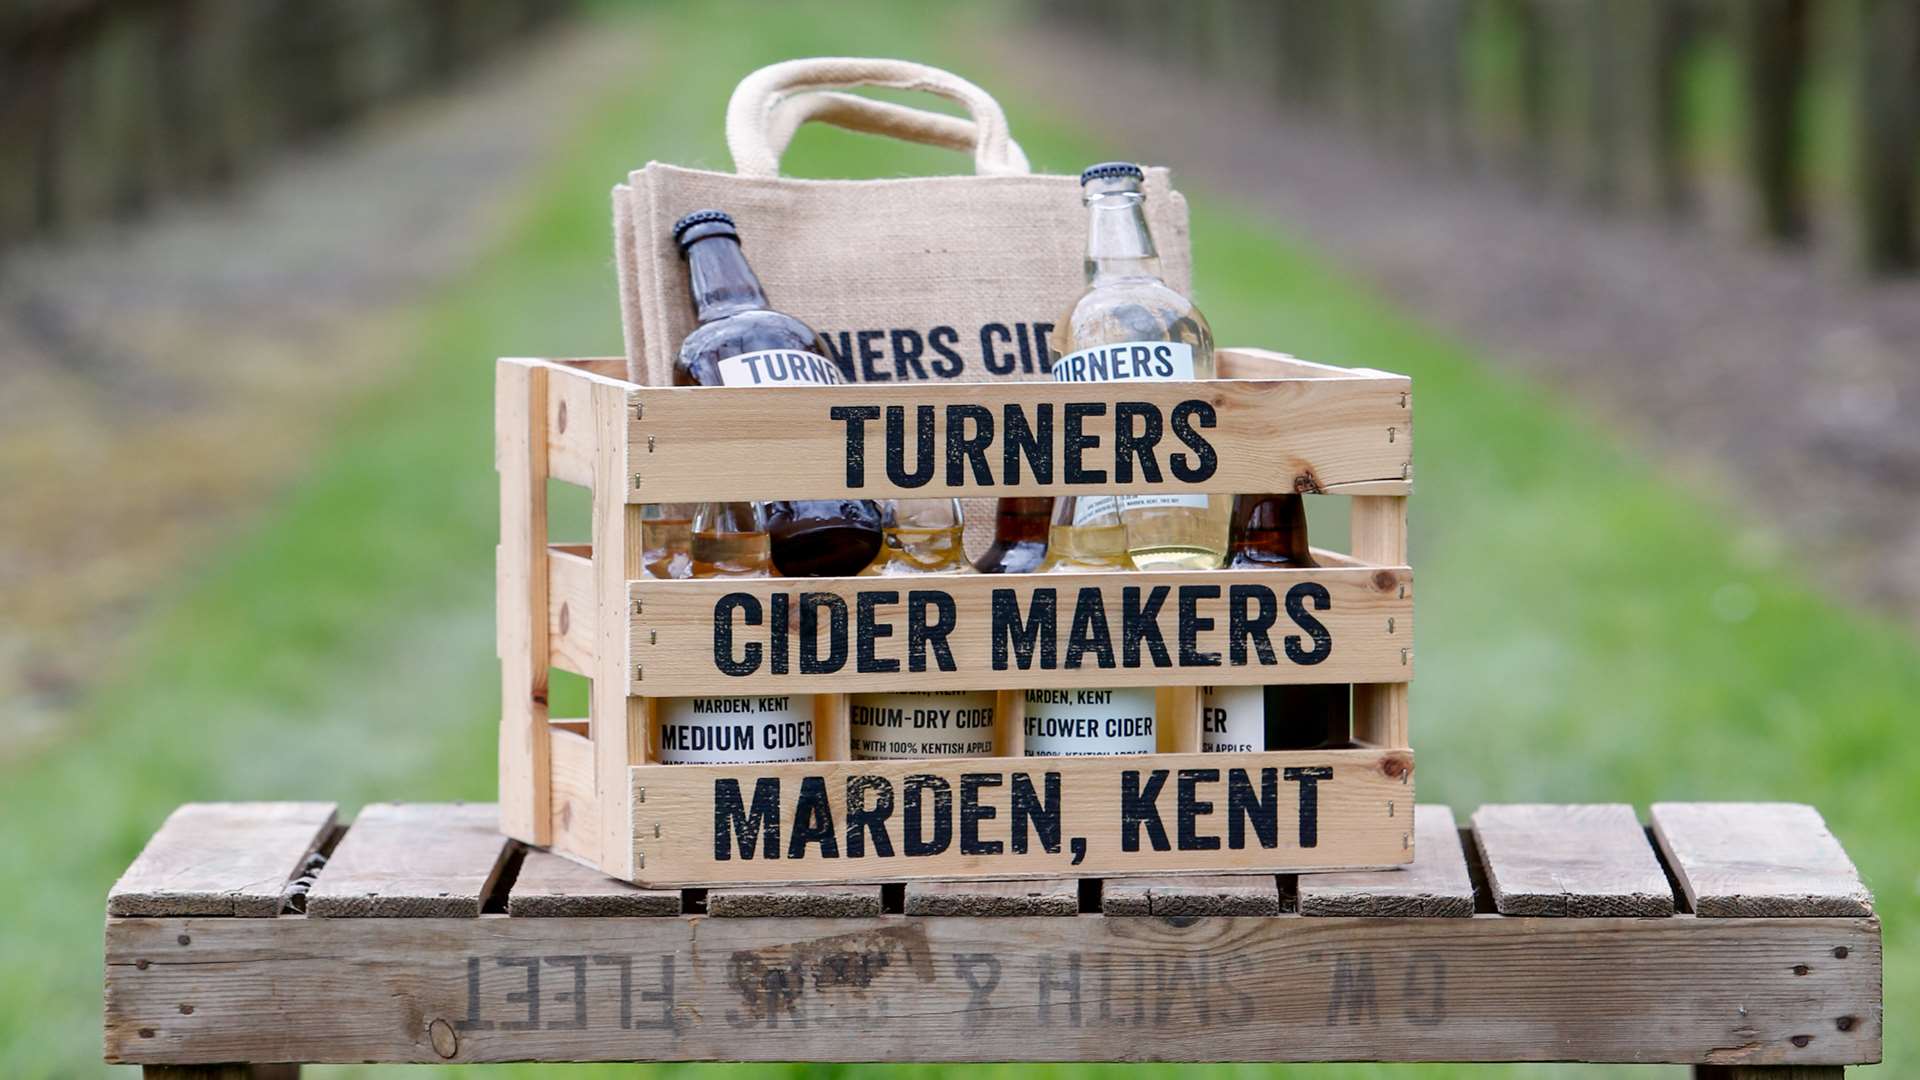 Turner's cider at Marden